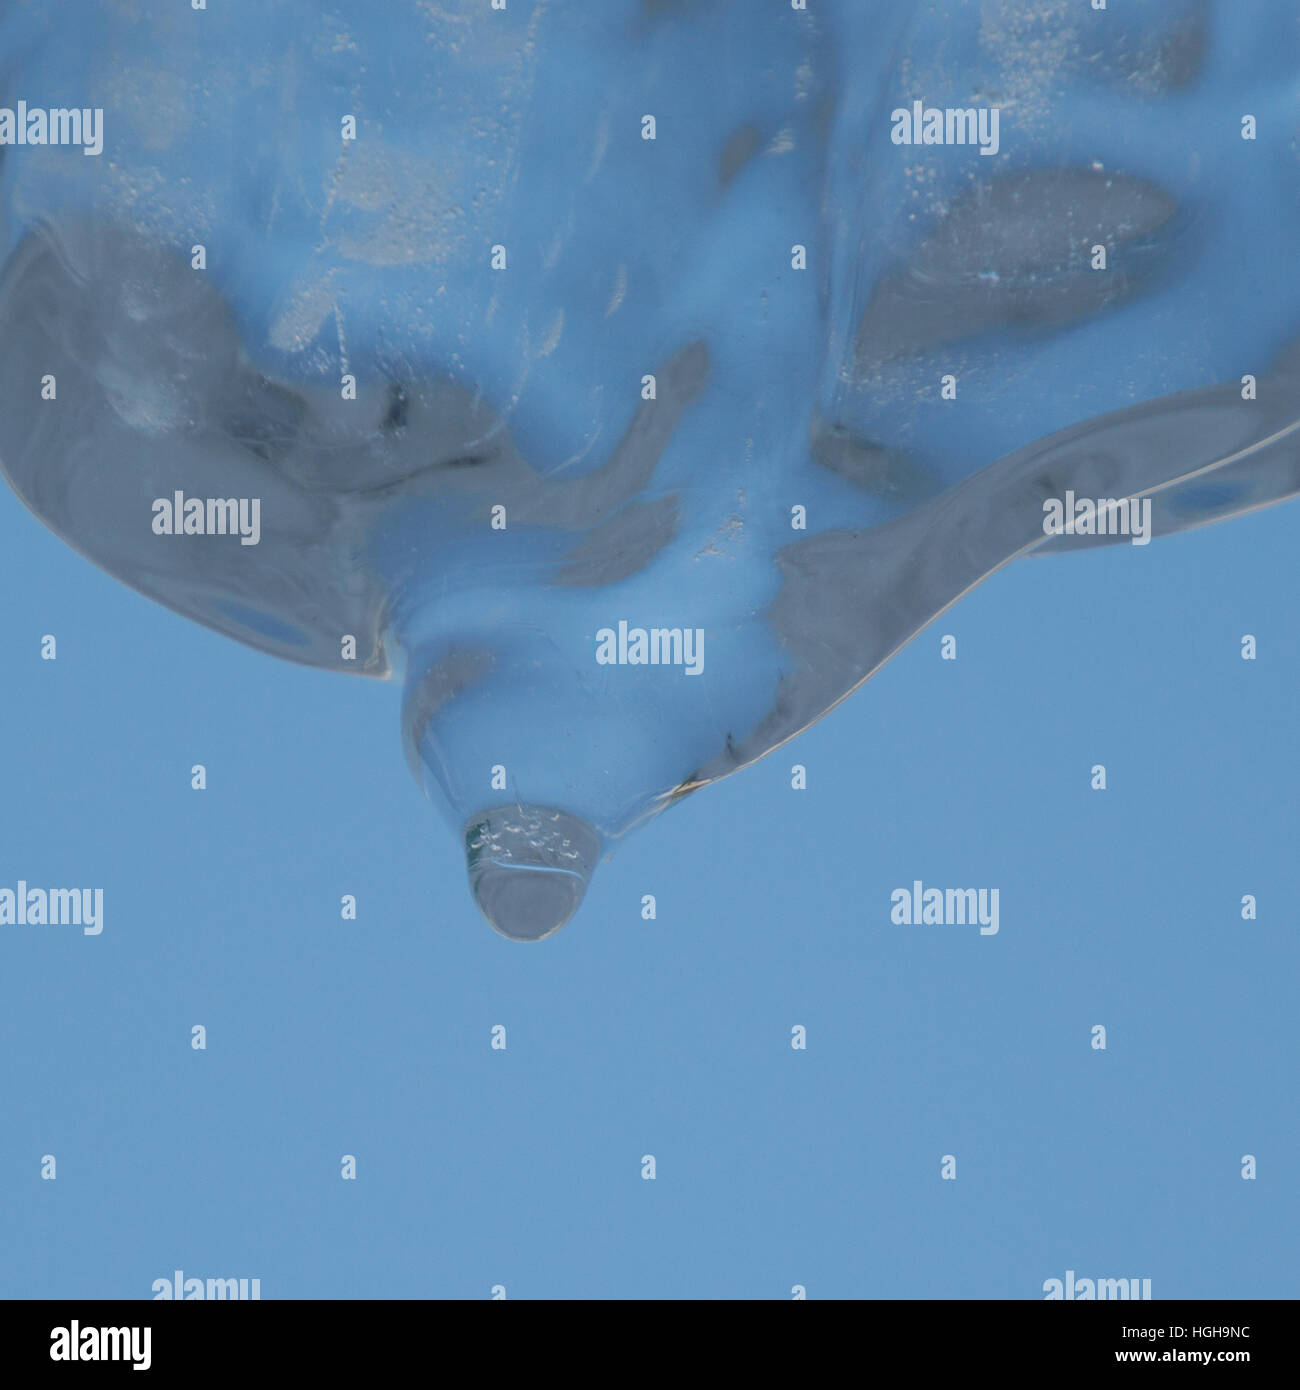 Abstraktes Bild der himmelblauen Hintergrund und blickte zu einer breiten kristallklare Eiszapfen schmelzen und Tropfwasser. Stockfoto